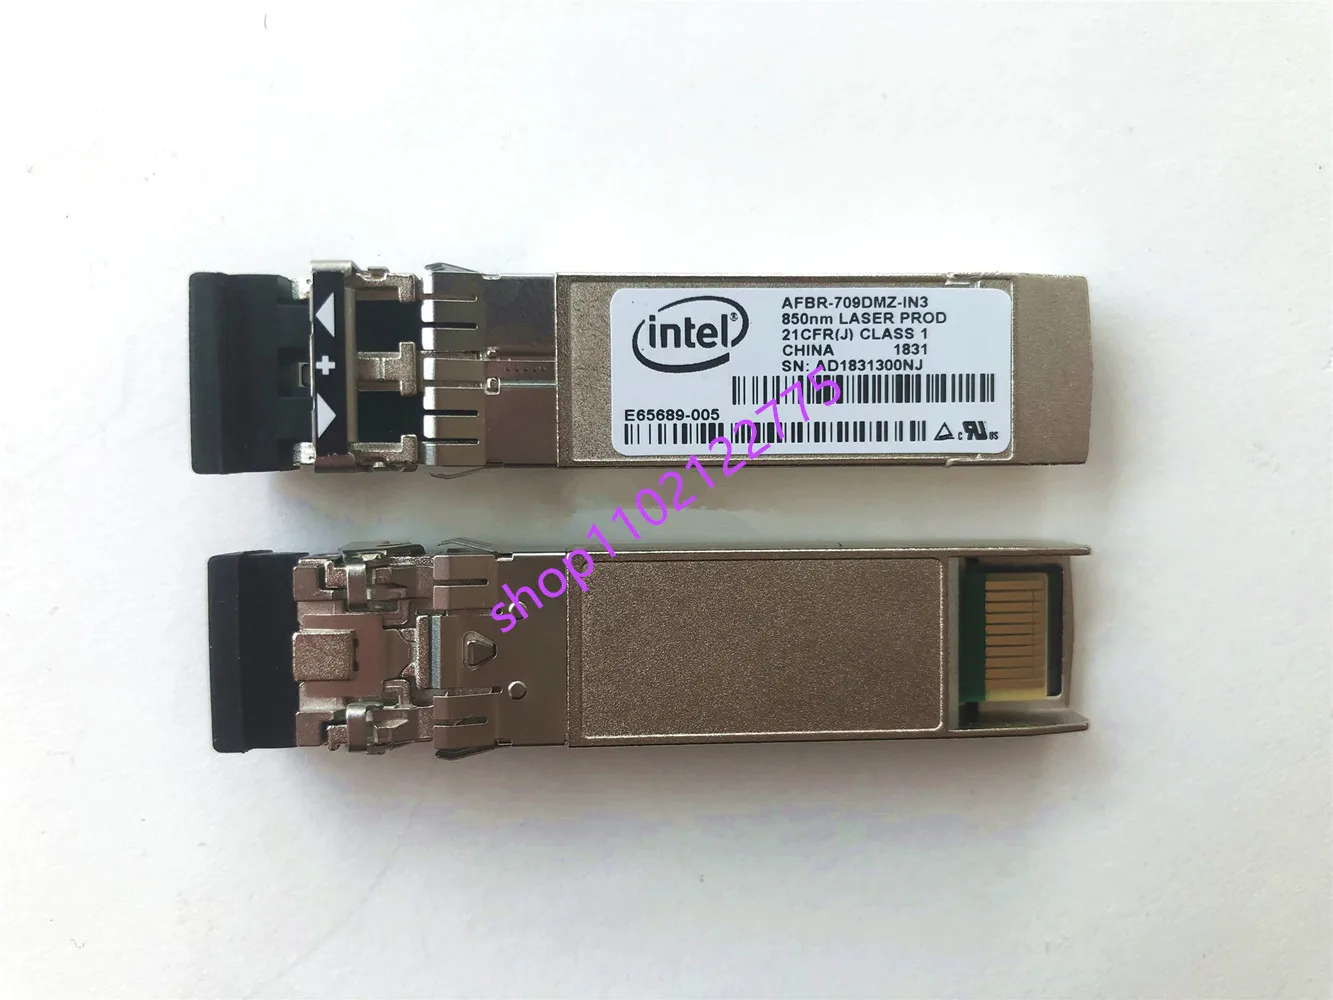 Intel sfp module 10g/AFBR-709DMZ-IN3/E65689-005/E10GSFPSR/850NM X520 X710 82599 network adapter general purpose module